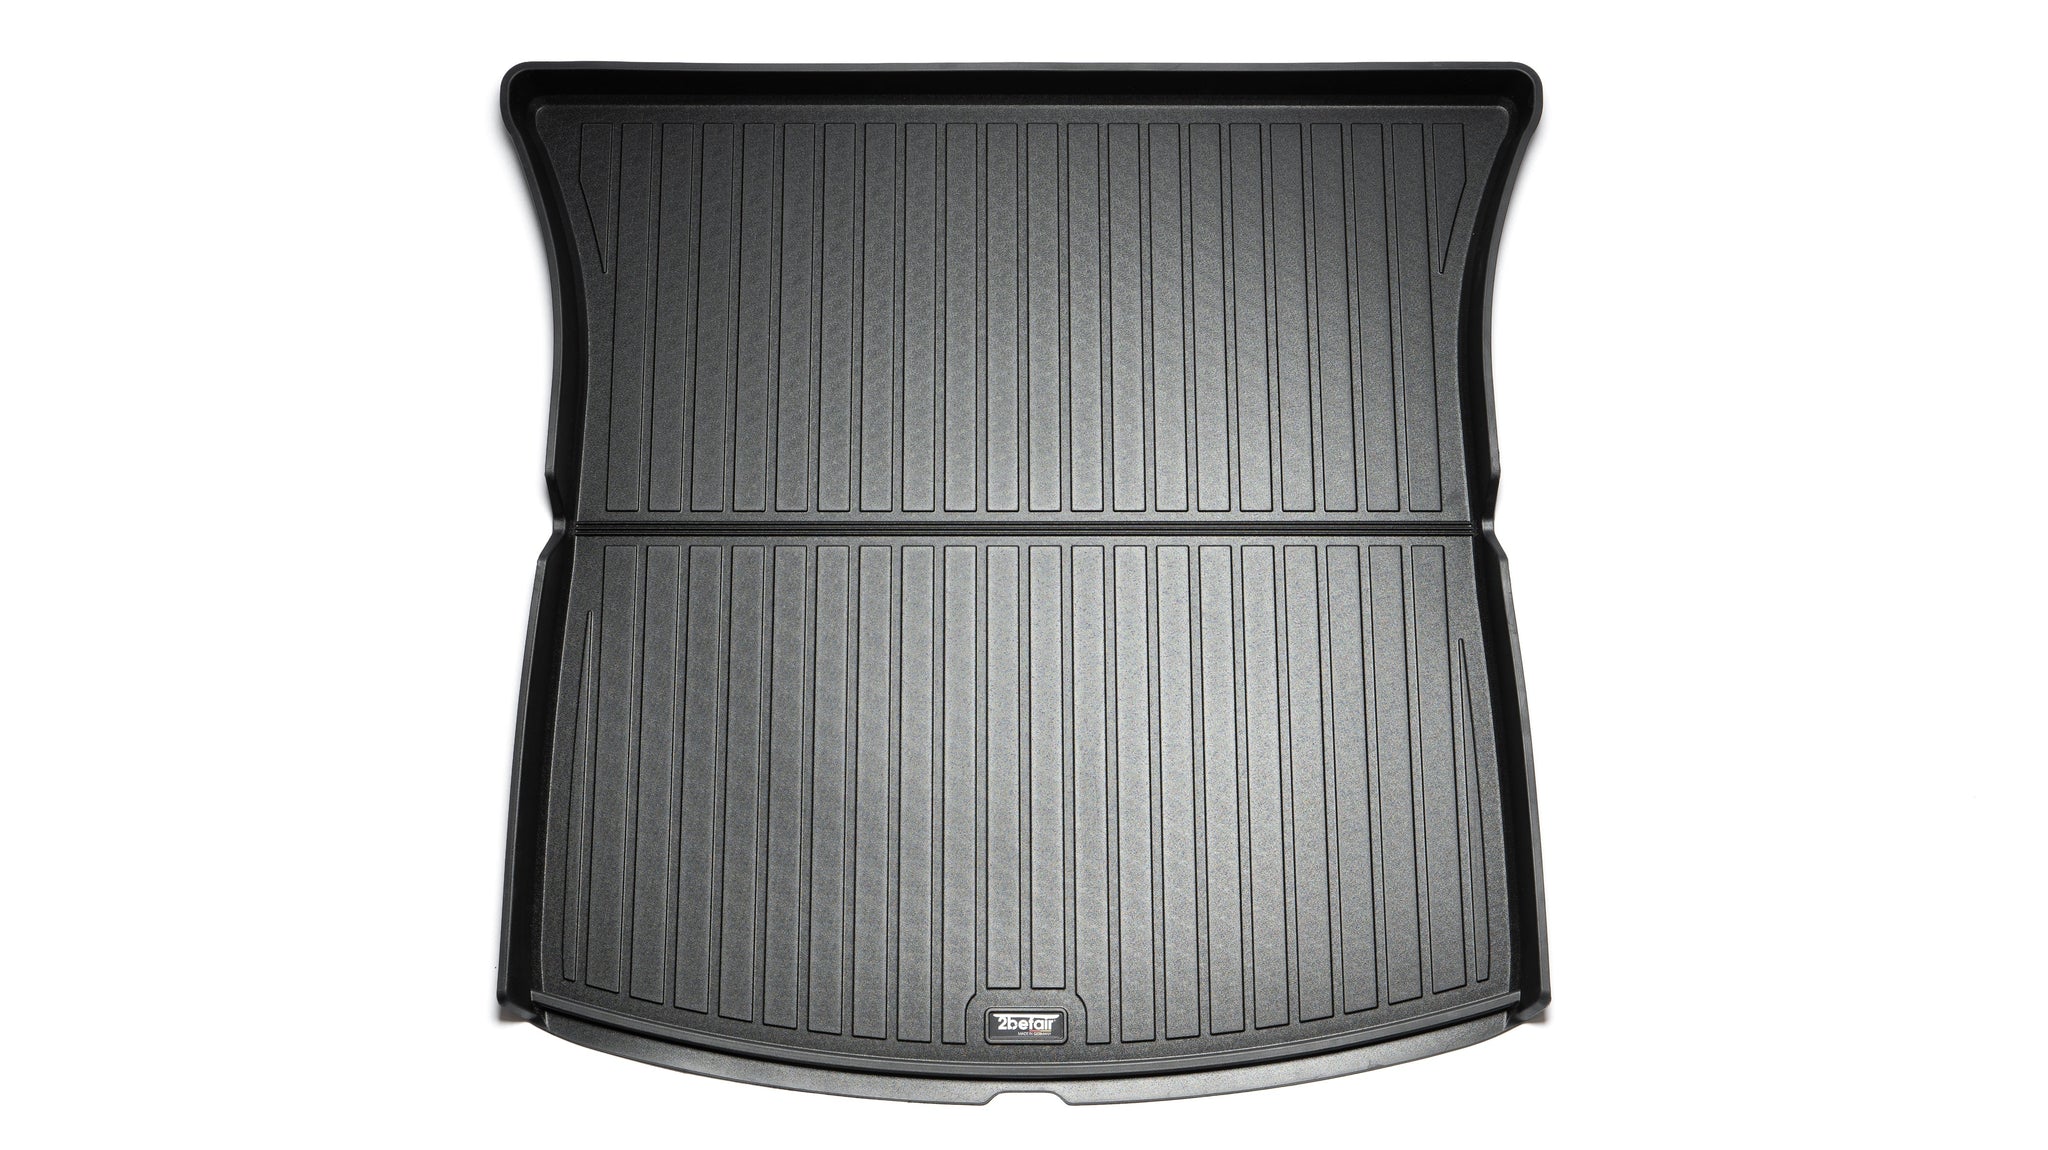 2befair rubber mats Total set for the Tesla Model Y